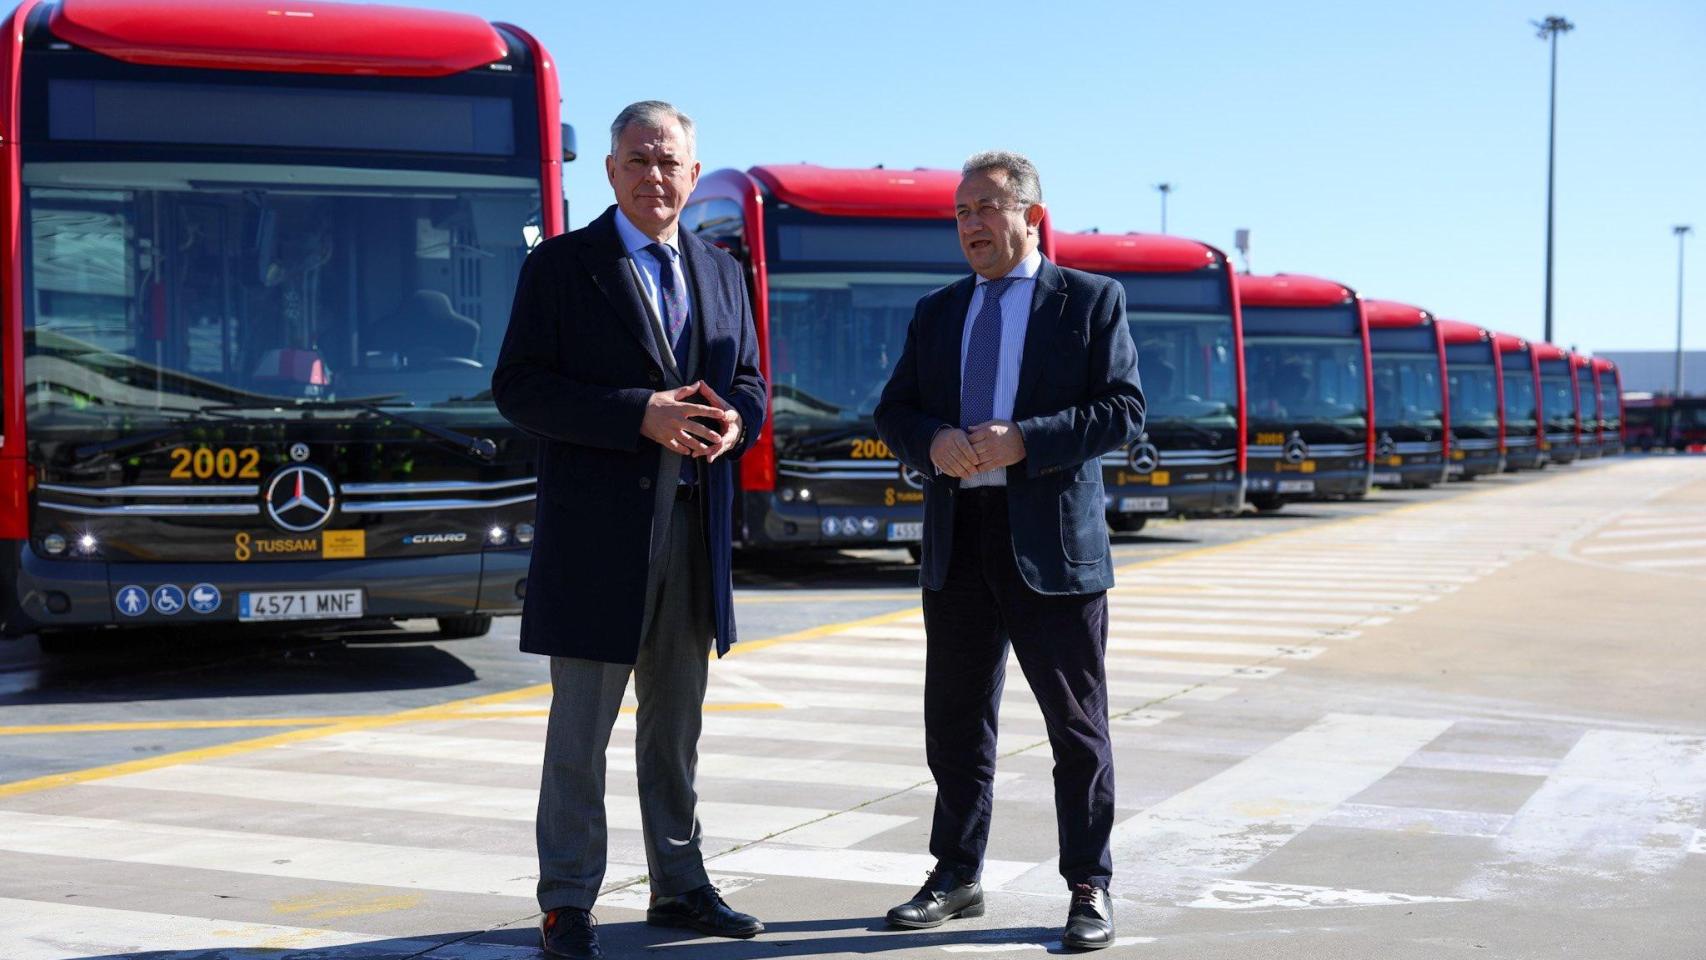 El alcalde, durante la presentación de nuevos autobuses de Tussam.